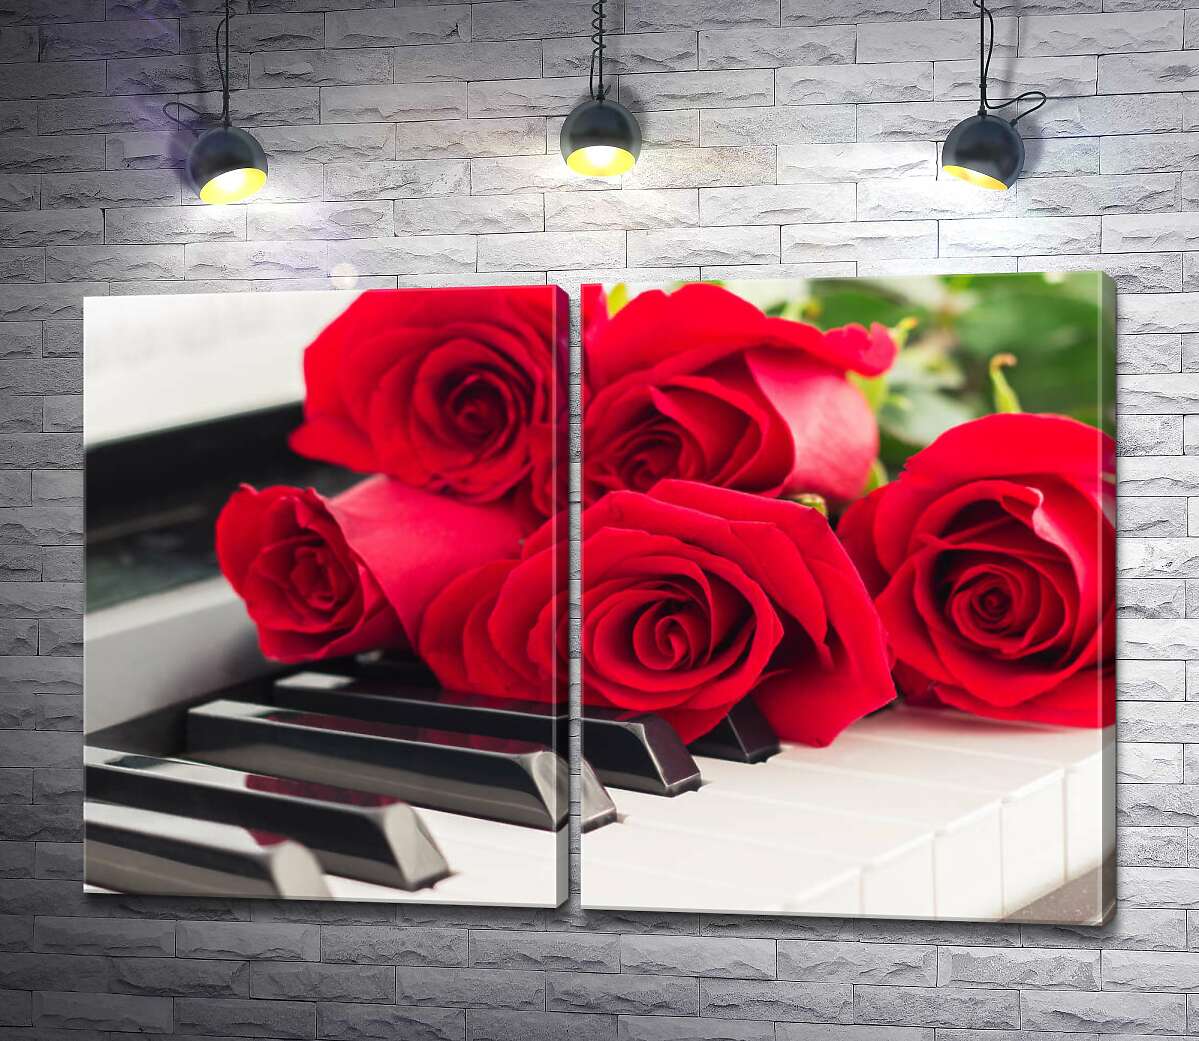 модульна картина Ніжні пелюстки троянд торкаються мелодійних клавіш білого фортепіано